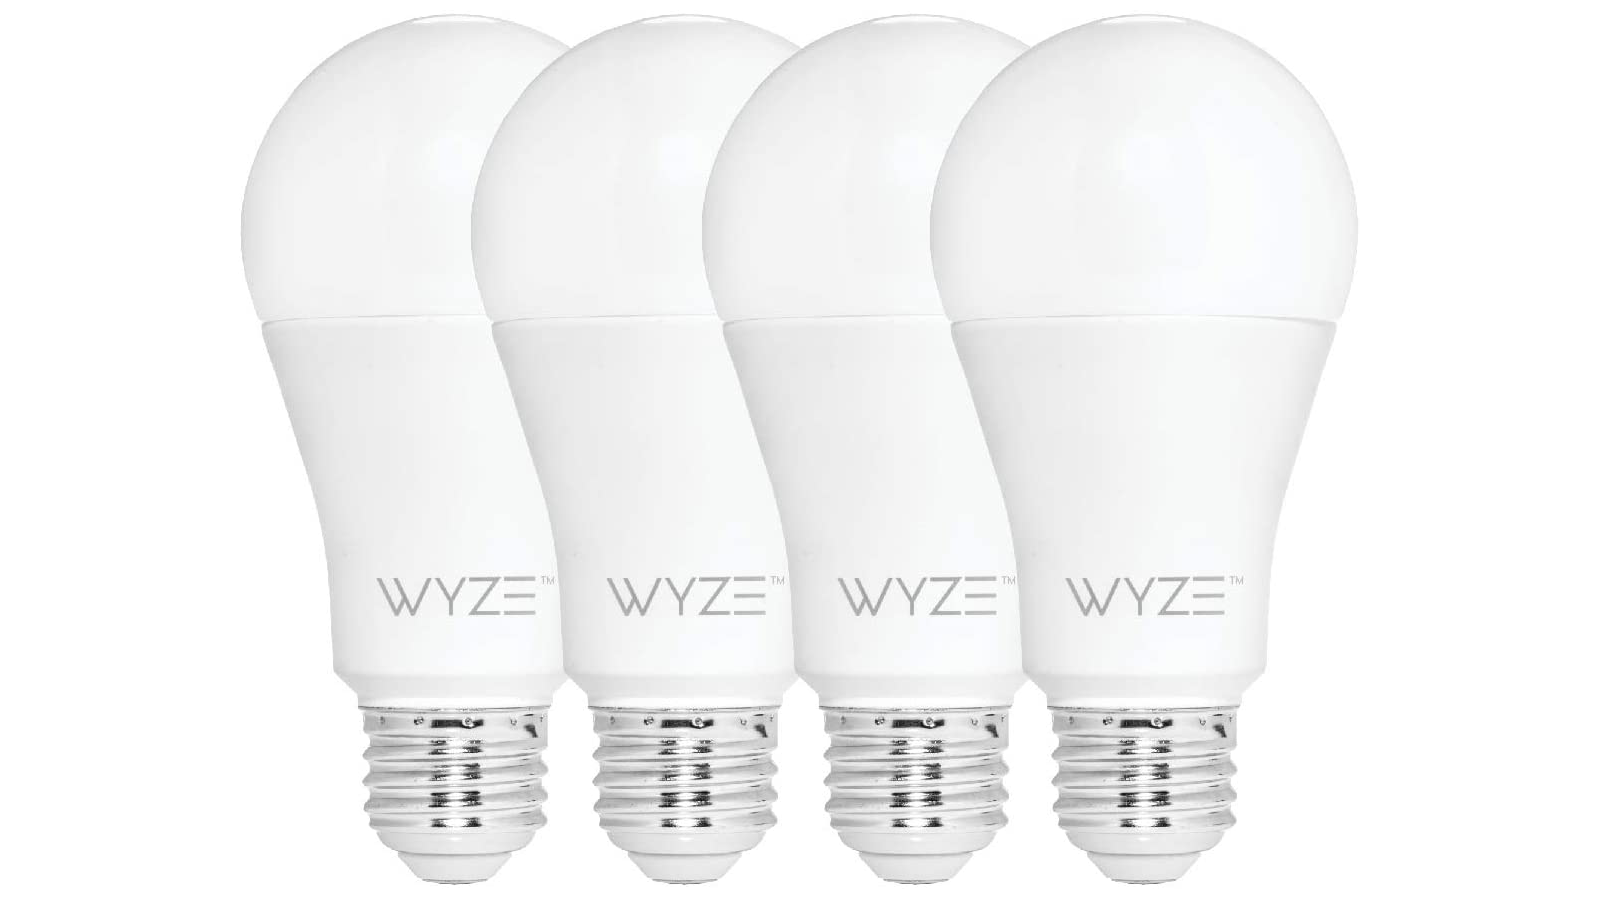 Bốn bóng đèn Wyze có thể điều chỉnh được màu trắng